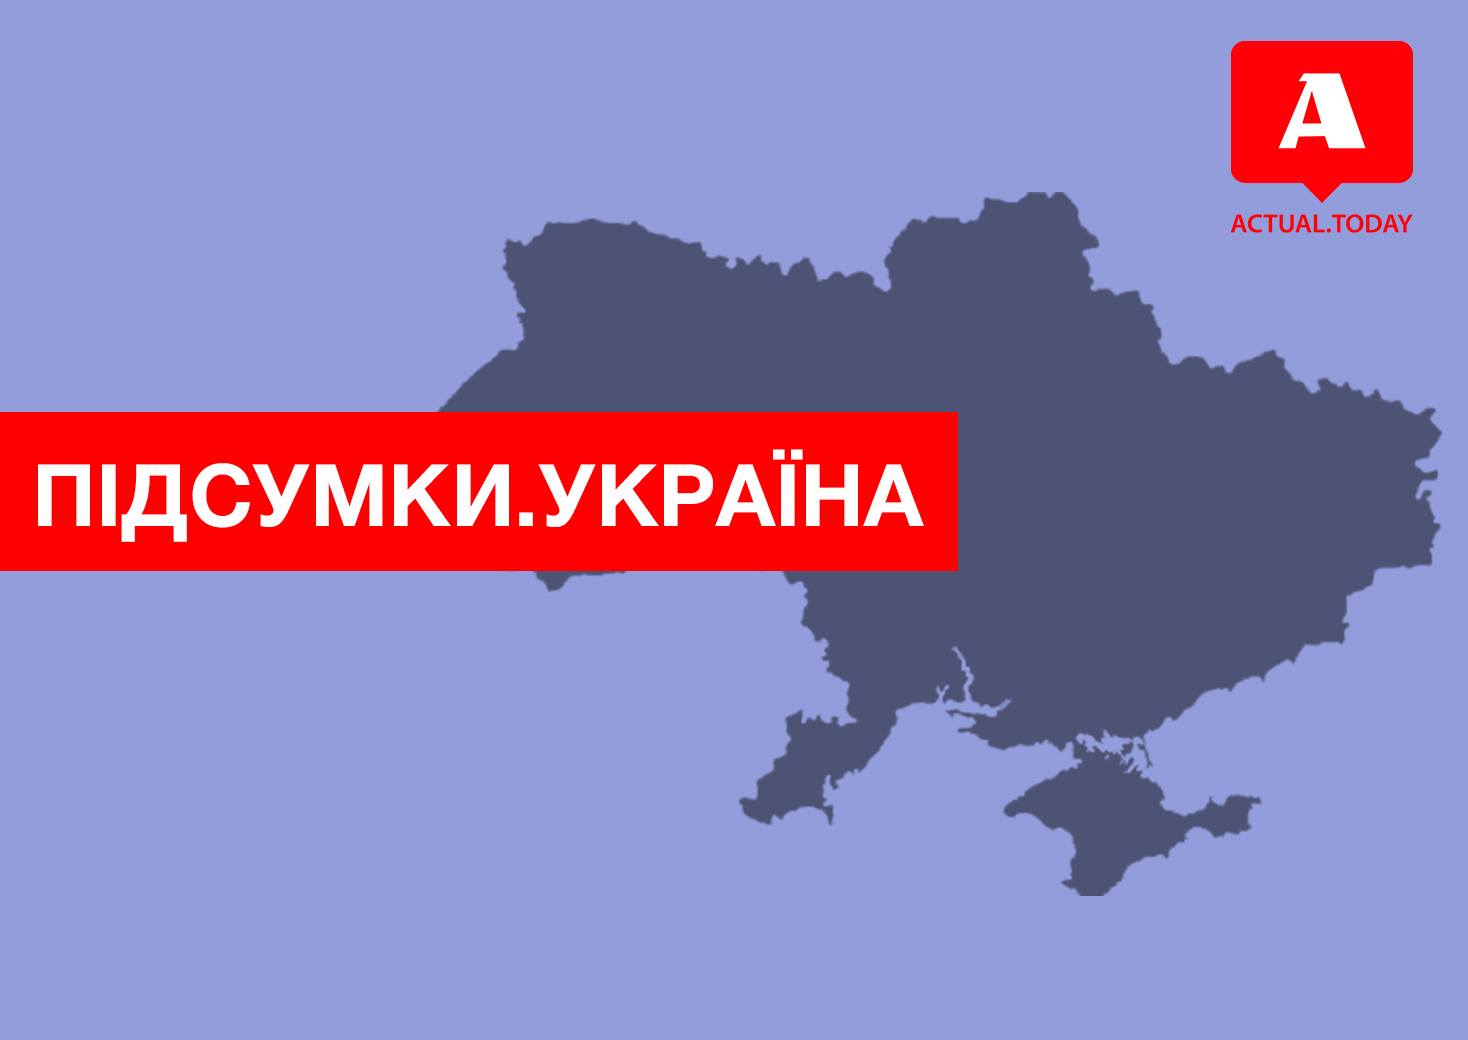 Снятие ареста с активов Коломойского, снижение цен на газ, предвыборный рейтинг – главные новости Украины за понедельник